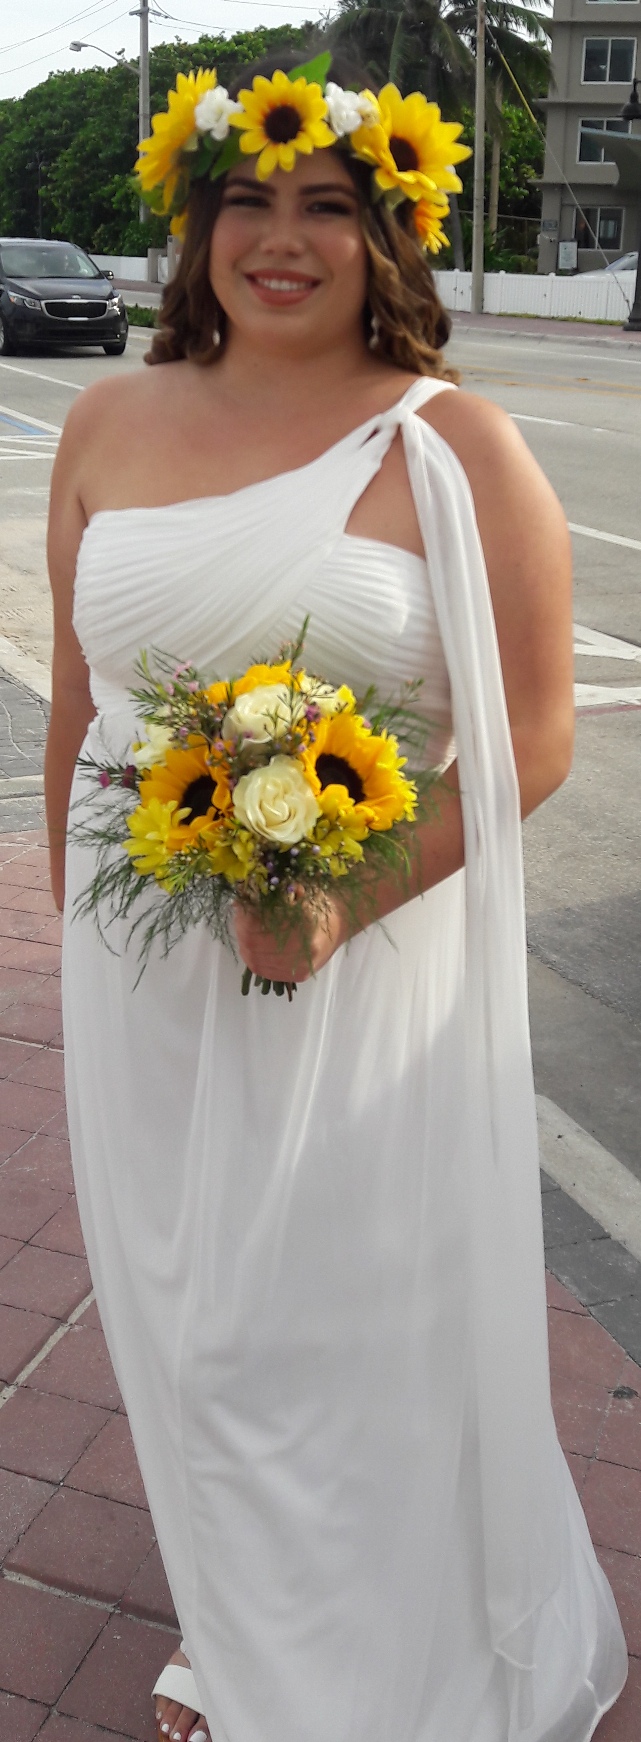 https://0201.nccdn.net/1_2/000/000/127/b24/sunflower-bride.jpg